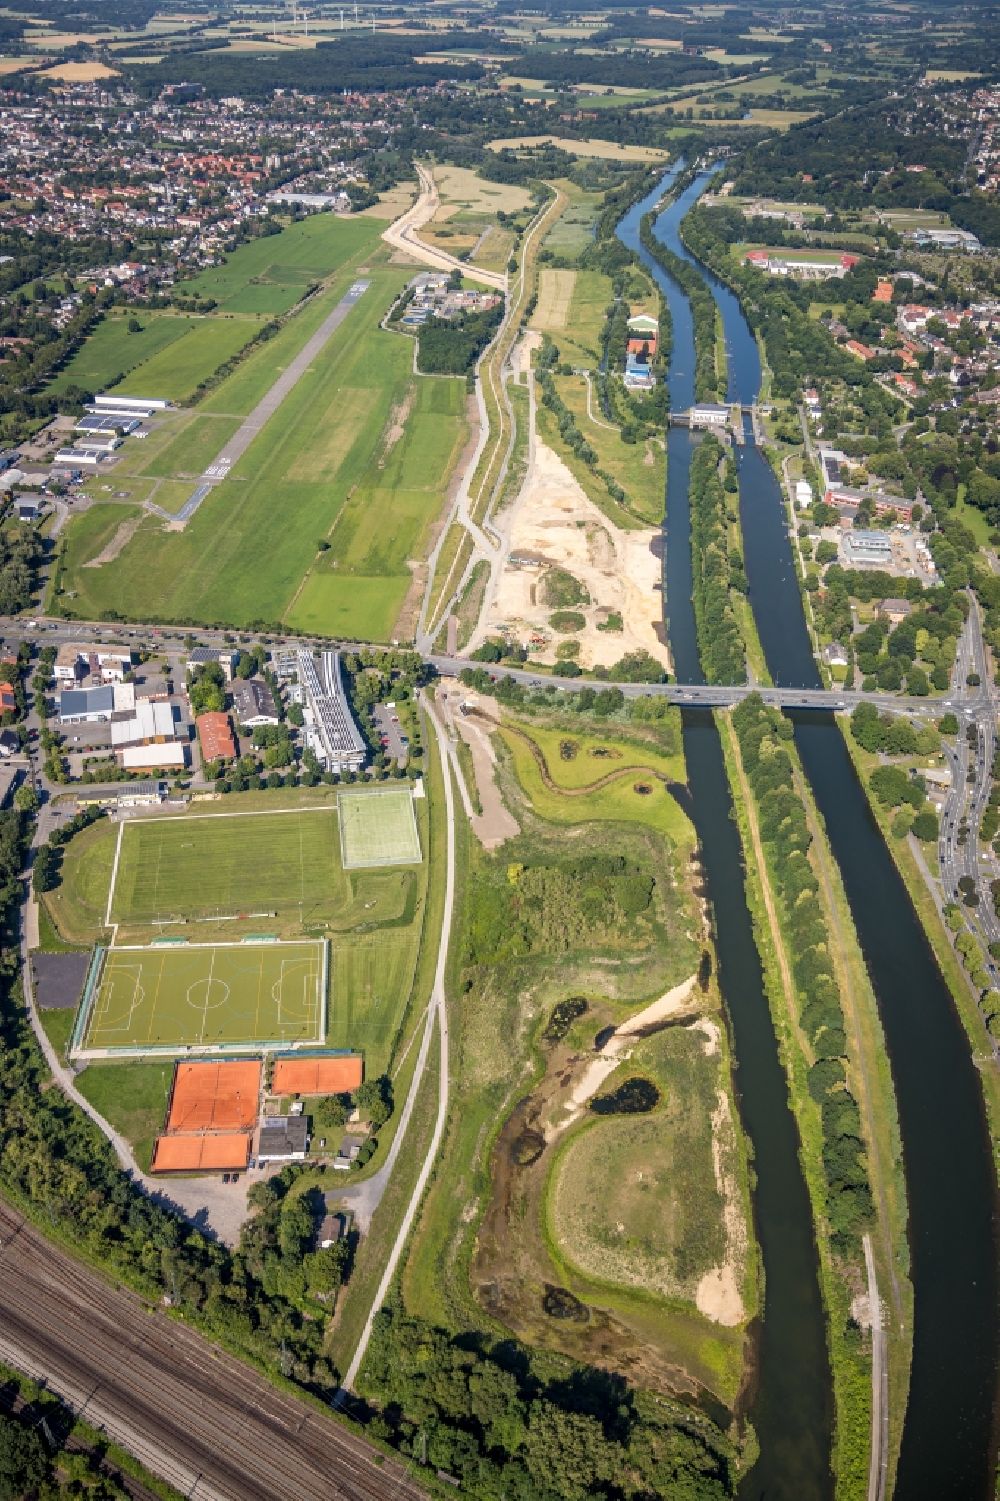 Luftbild Hamm - Baustelle zur Errichtung einer neuen Parkanlage des Erlebnisraum Lippeaue entlang der Lippe in Hamm im Bundesland Nordrhein-Westfalen, Deutschland